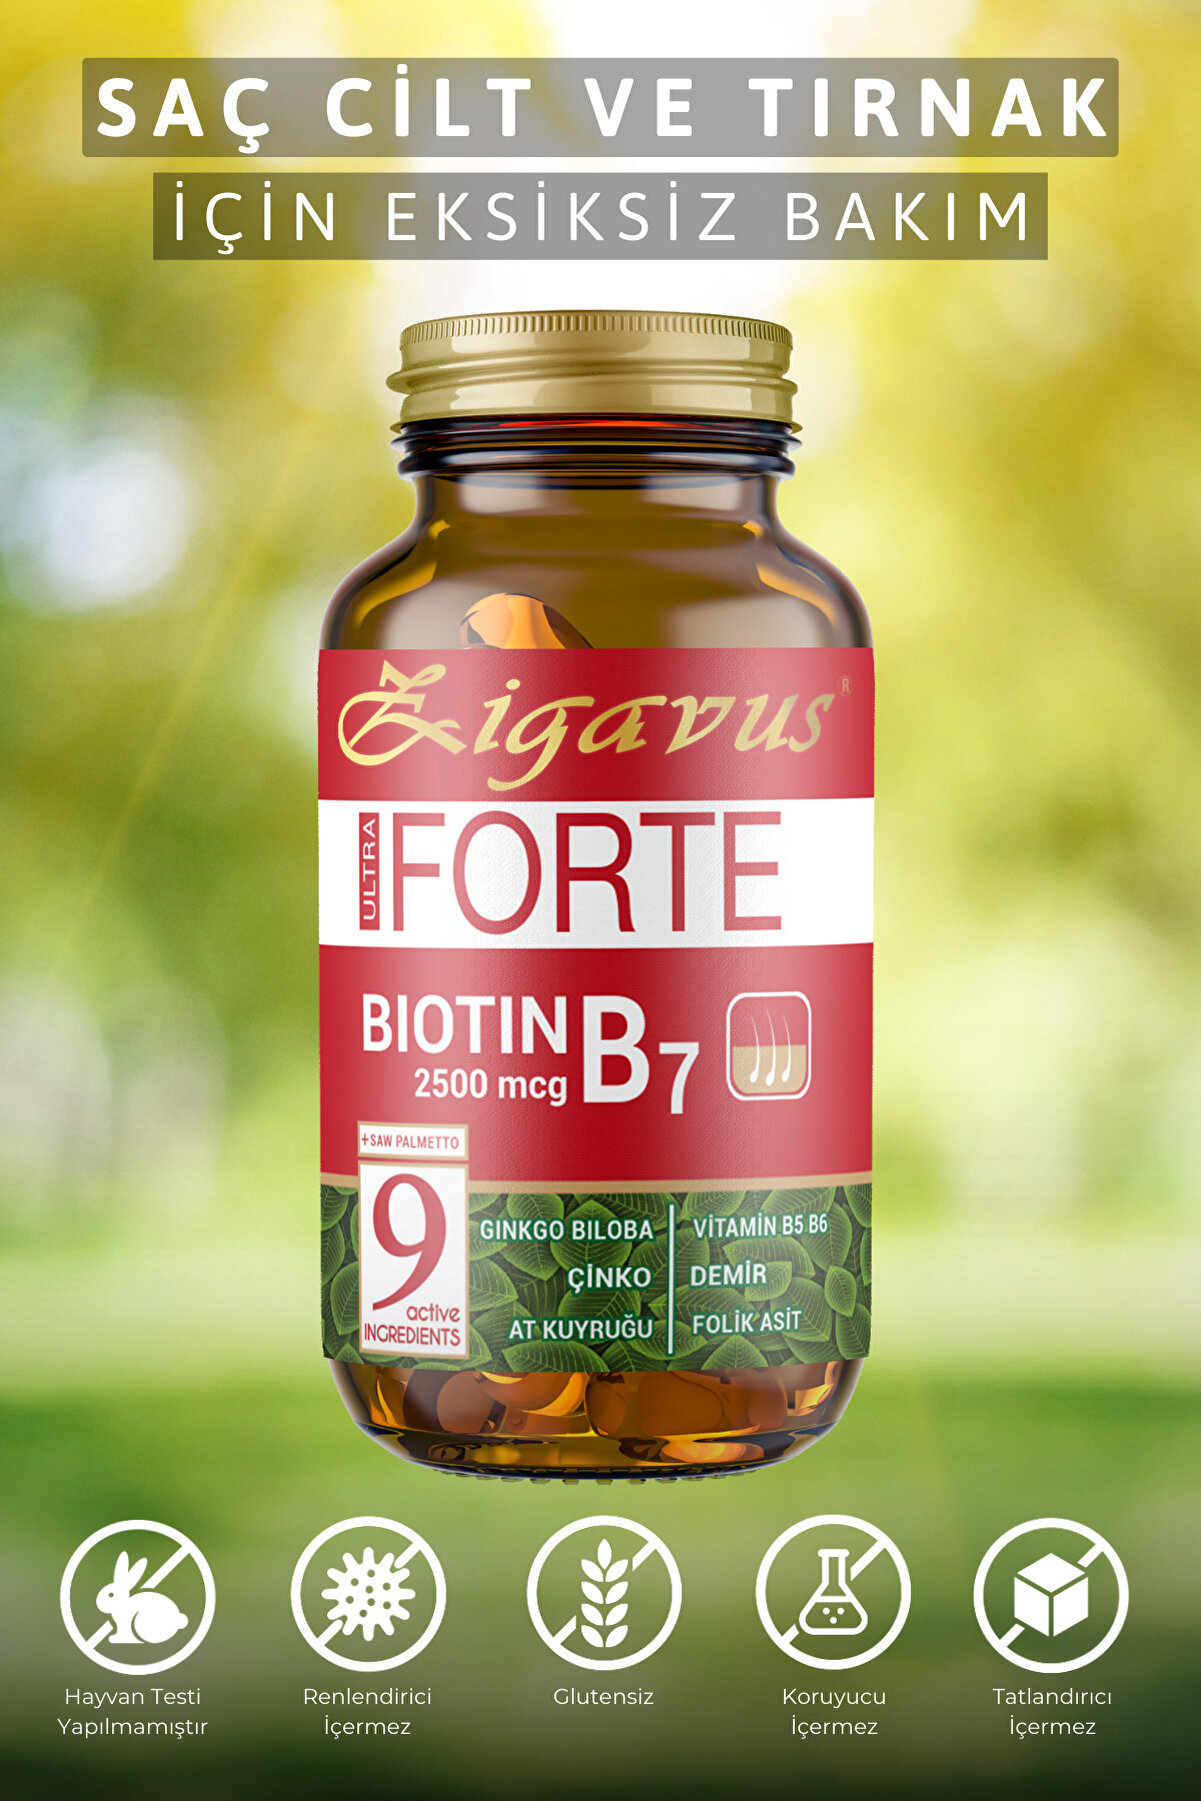 Zigavus Forte Biotin Tablet Saç, Tırnak ve Cilt İçin Güçlendirici Gıda Takviyesi Çinko ve Demir